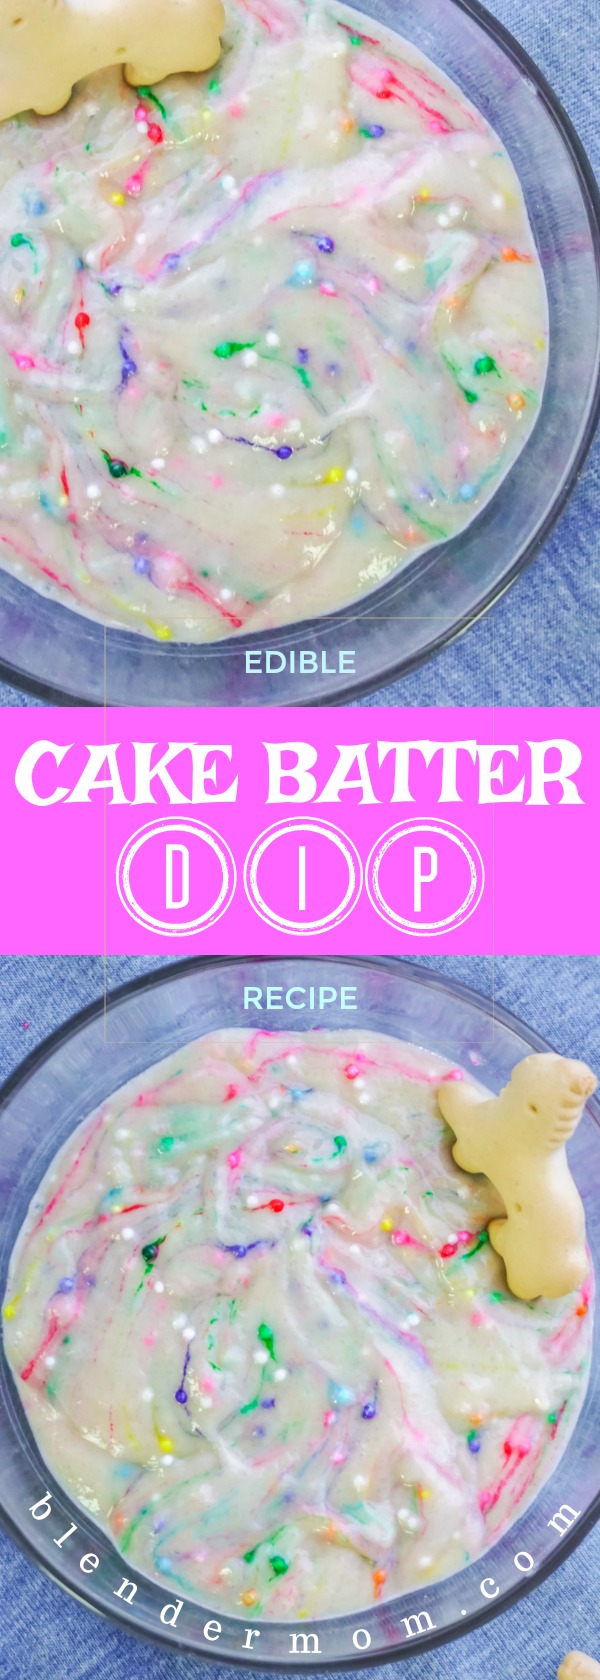 edible cake batter dip recipe